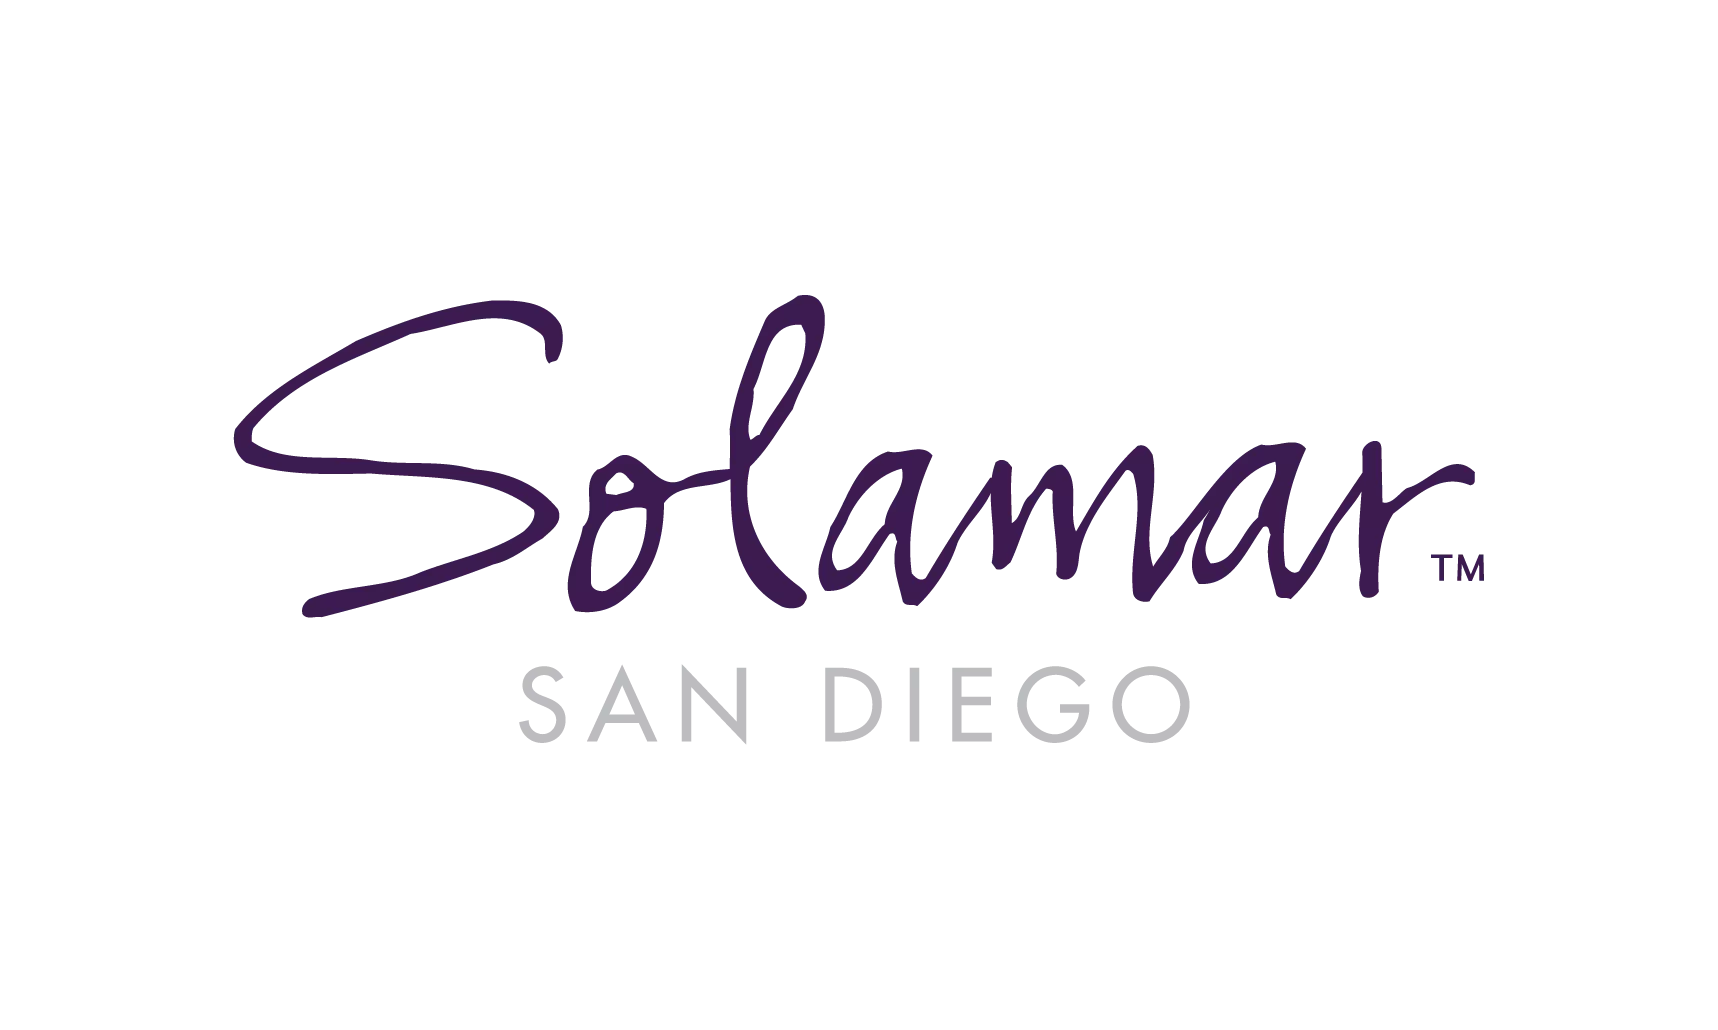 Solamar San Diego